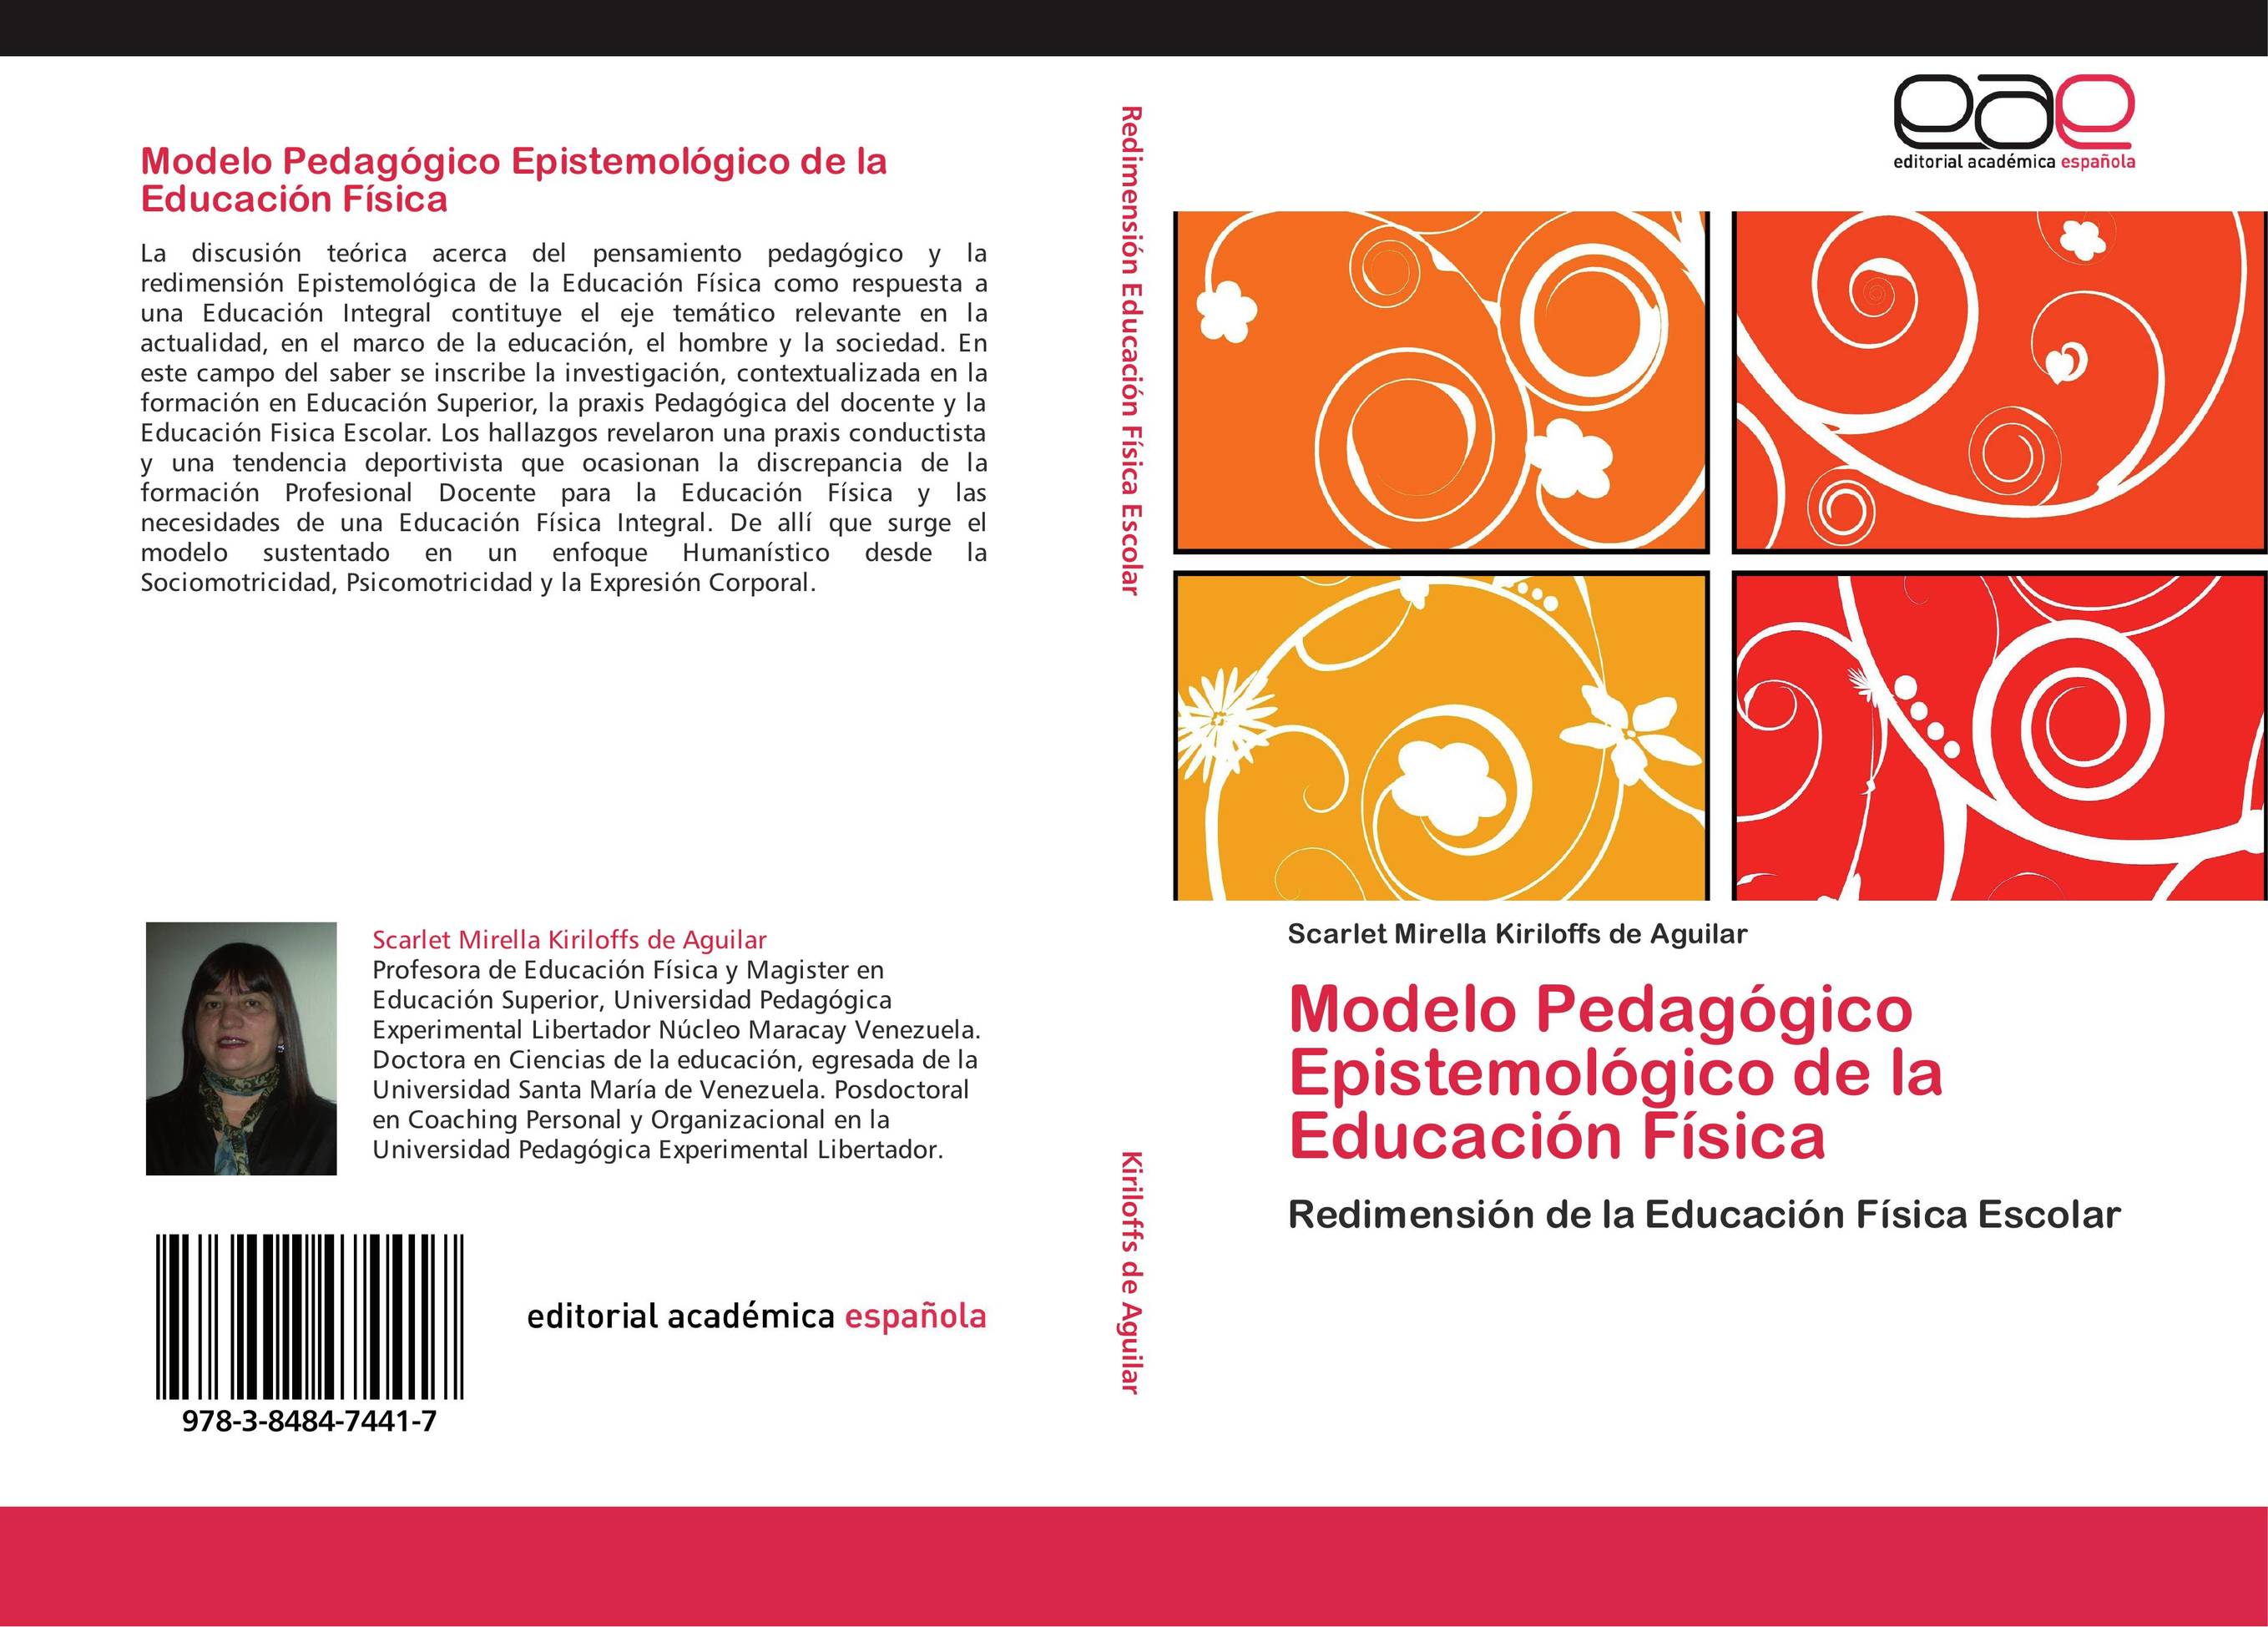 Modelo Pedagógico Epistemológico de la Educación Física